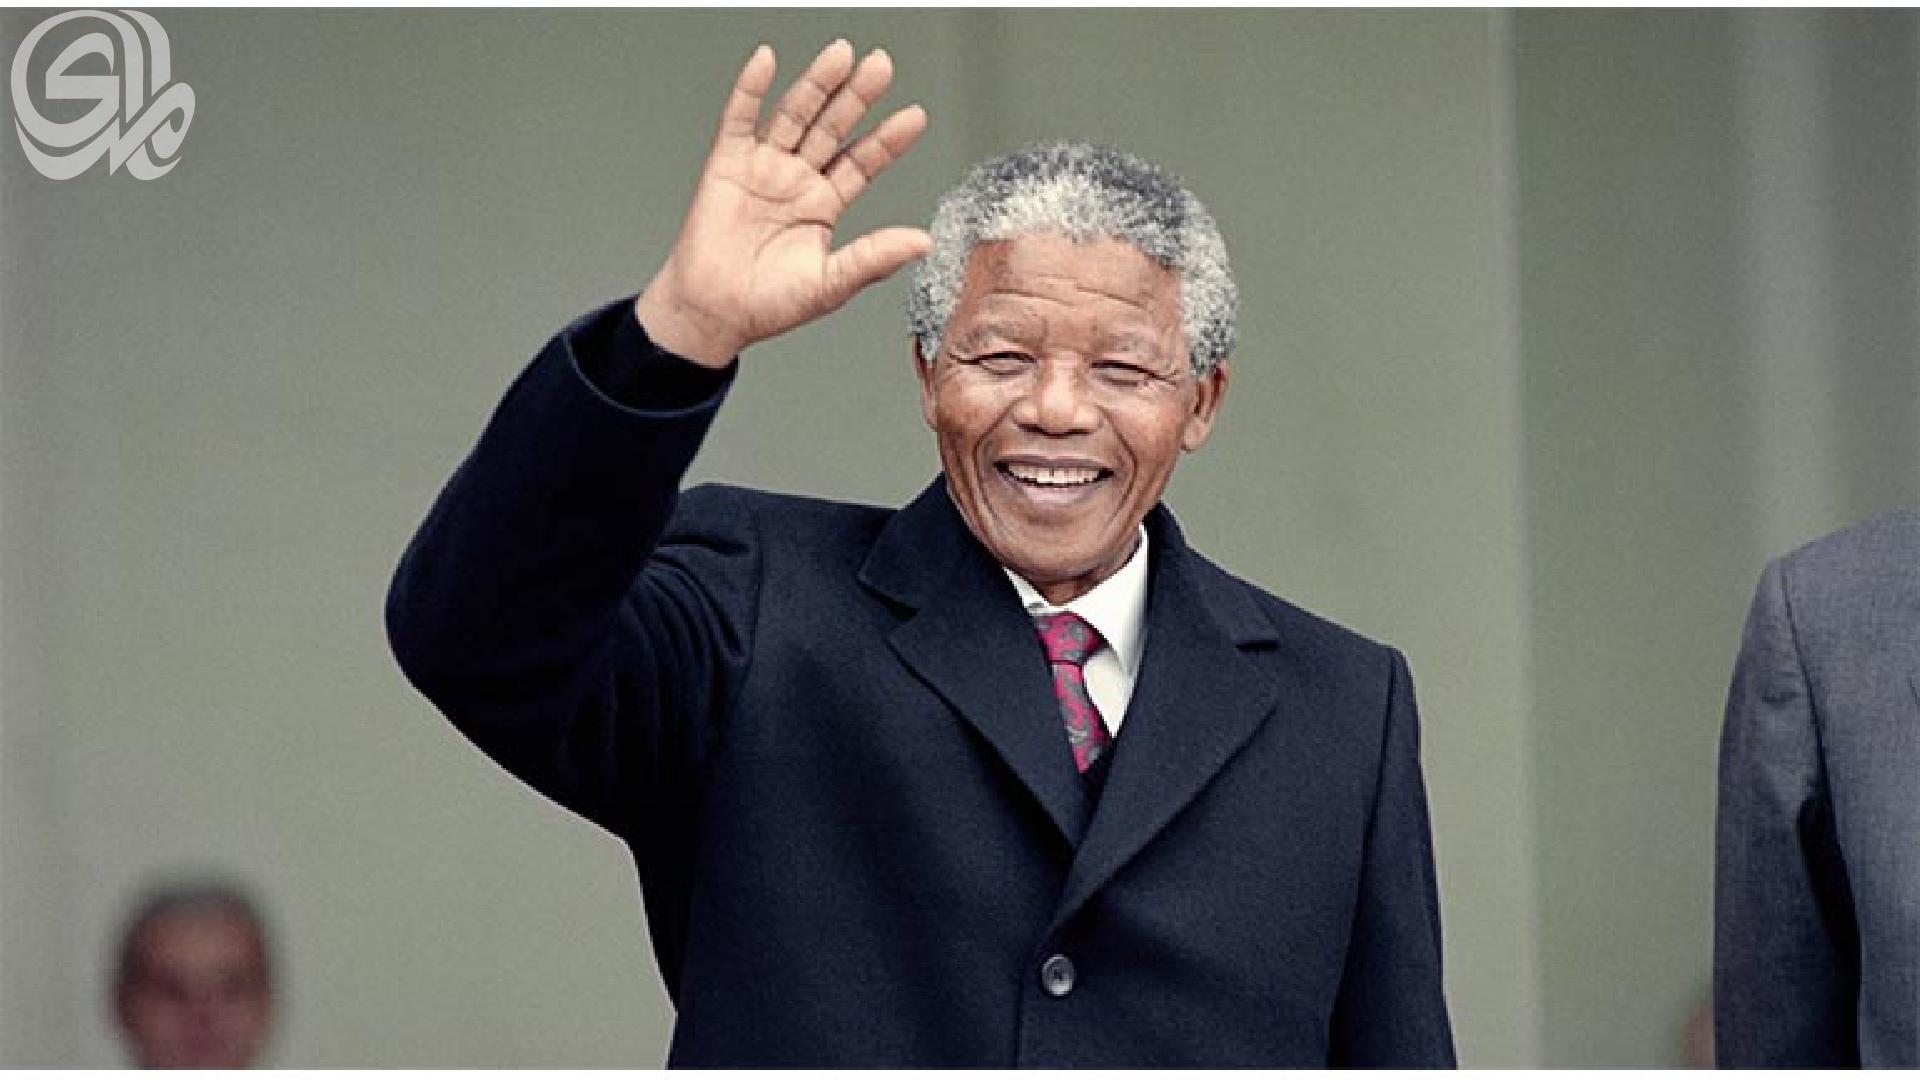 أيقونة العصر يودّع عالماً تداعت فيه القيم: نيلسون مانديلا يتحدث صامتاً..!